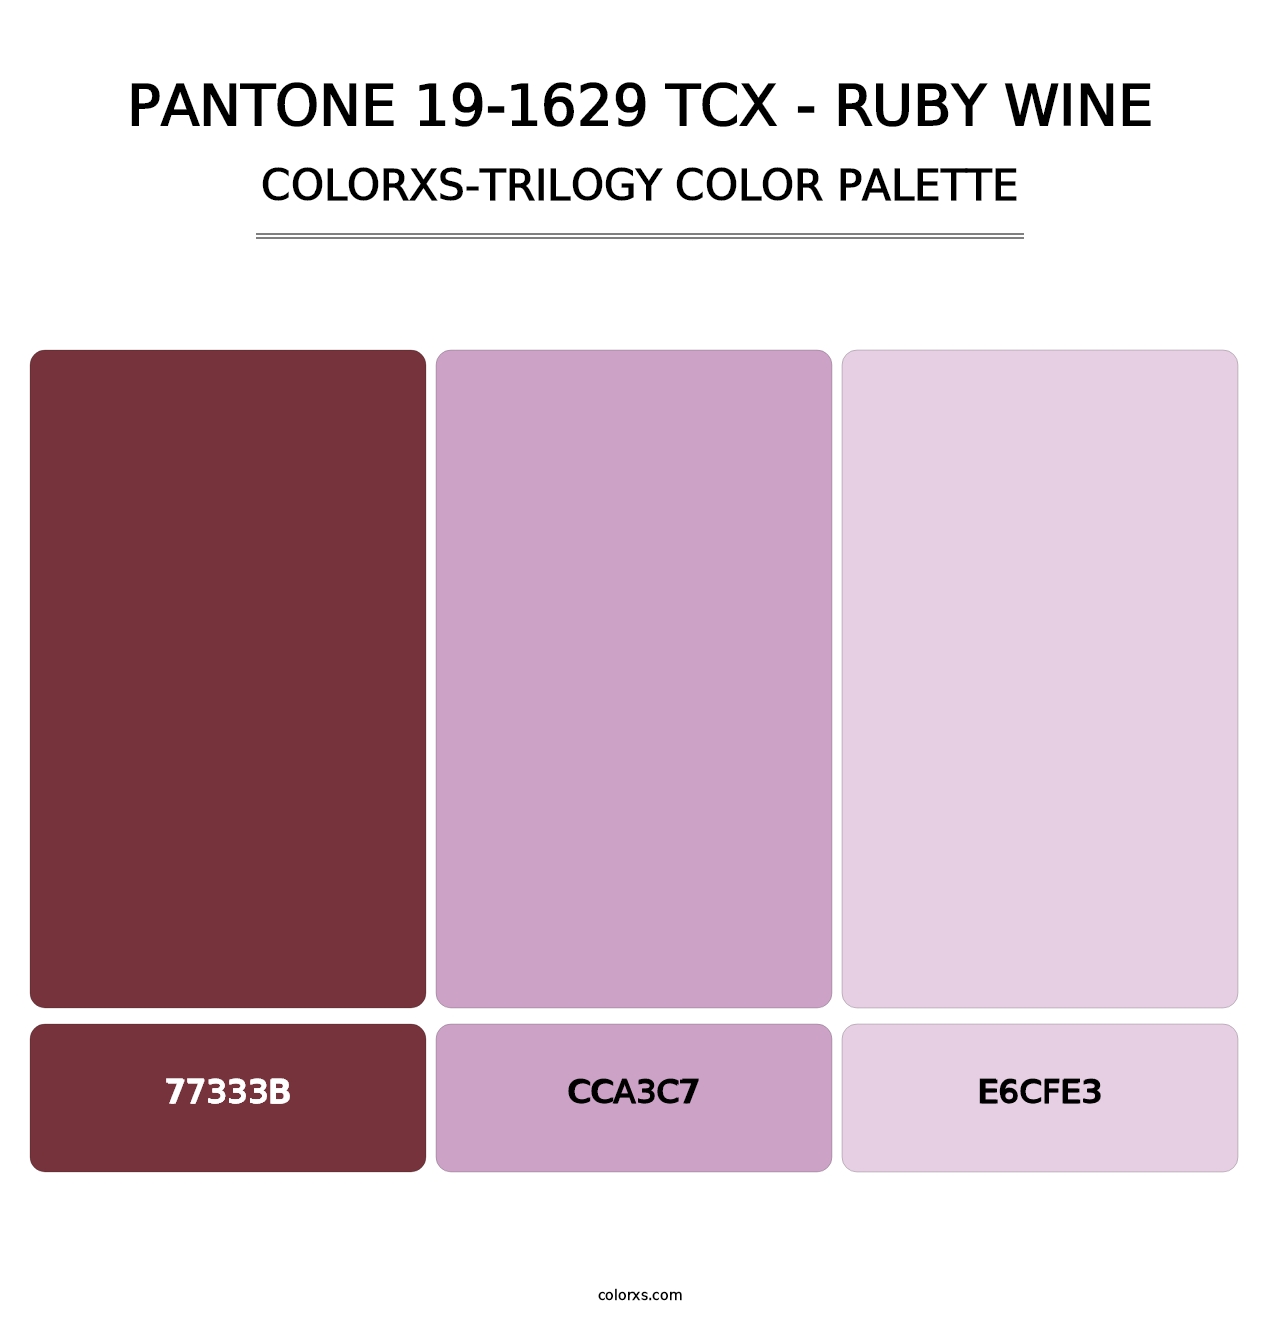 PANTONE 19-1629 TCX - Ruby Wine - Colorxs Trilogy Palette